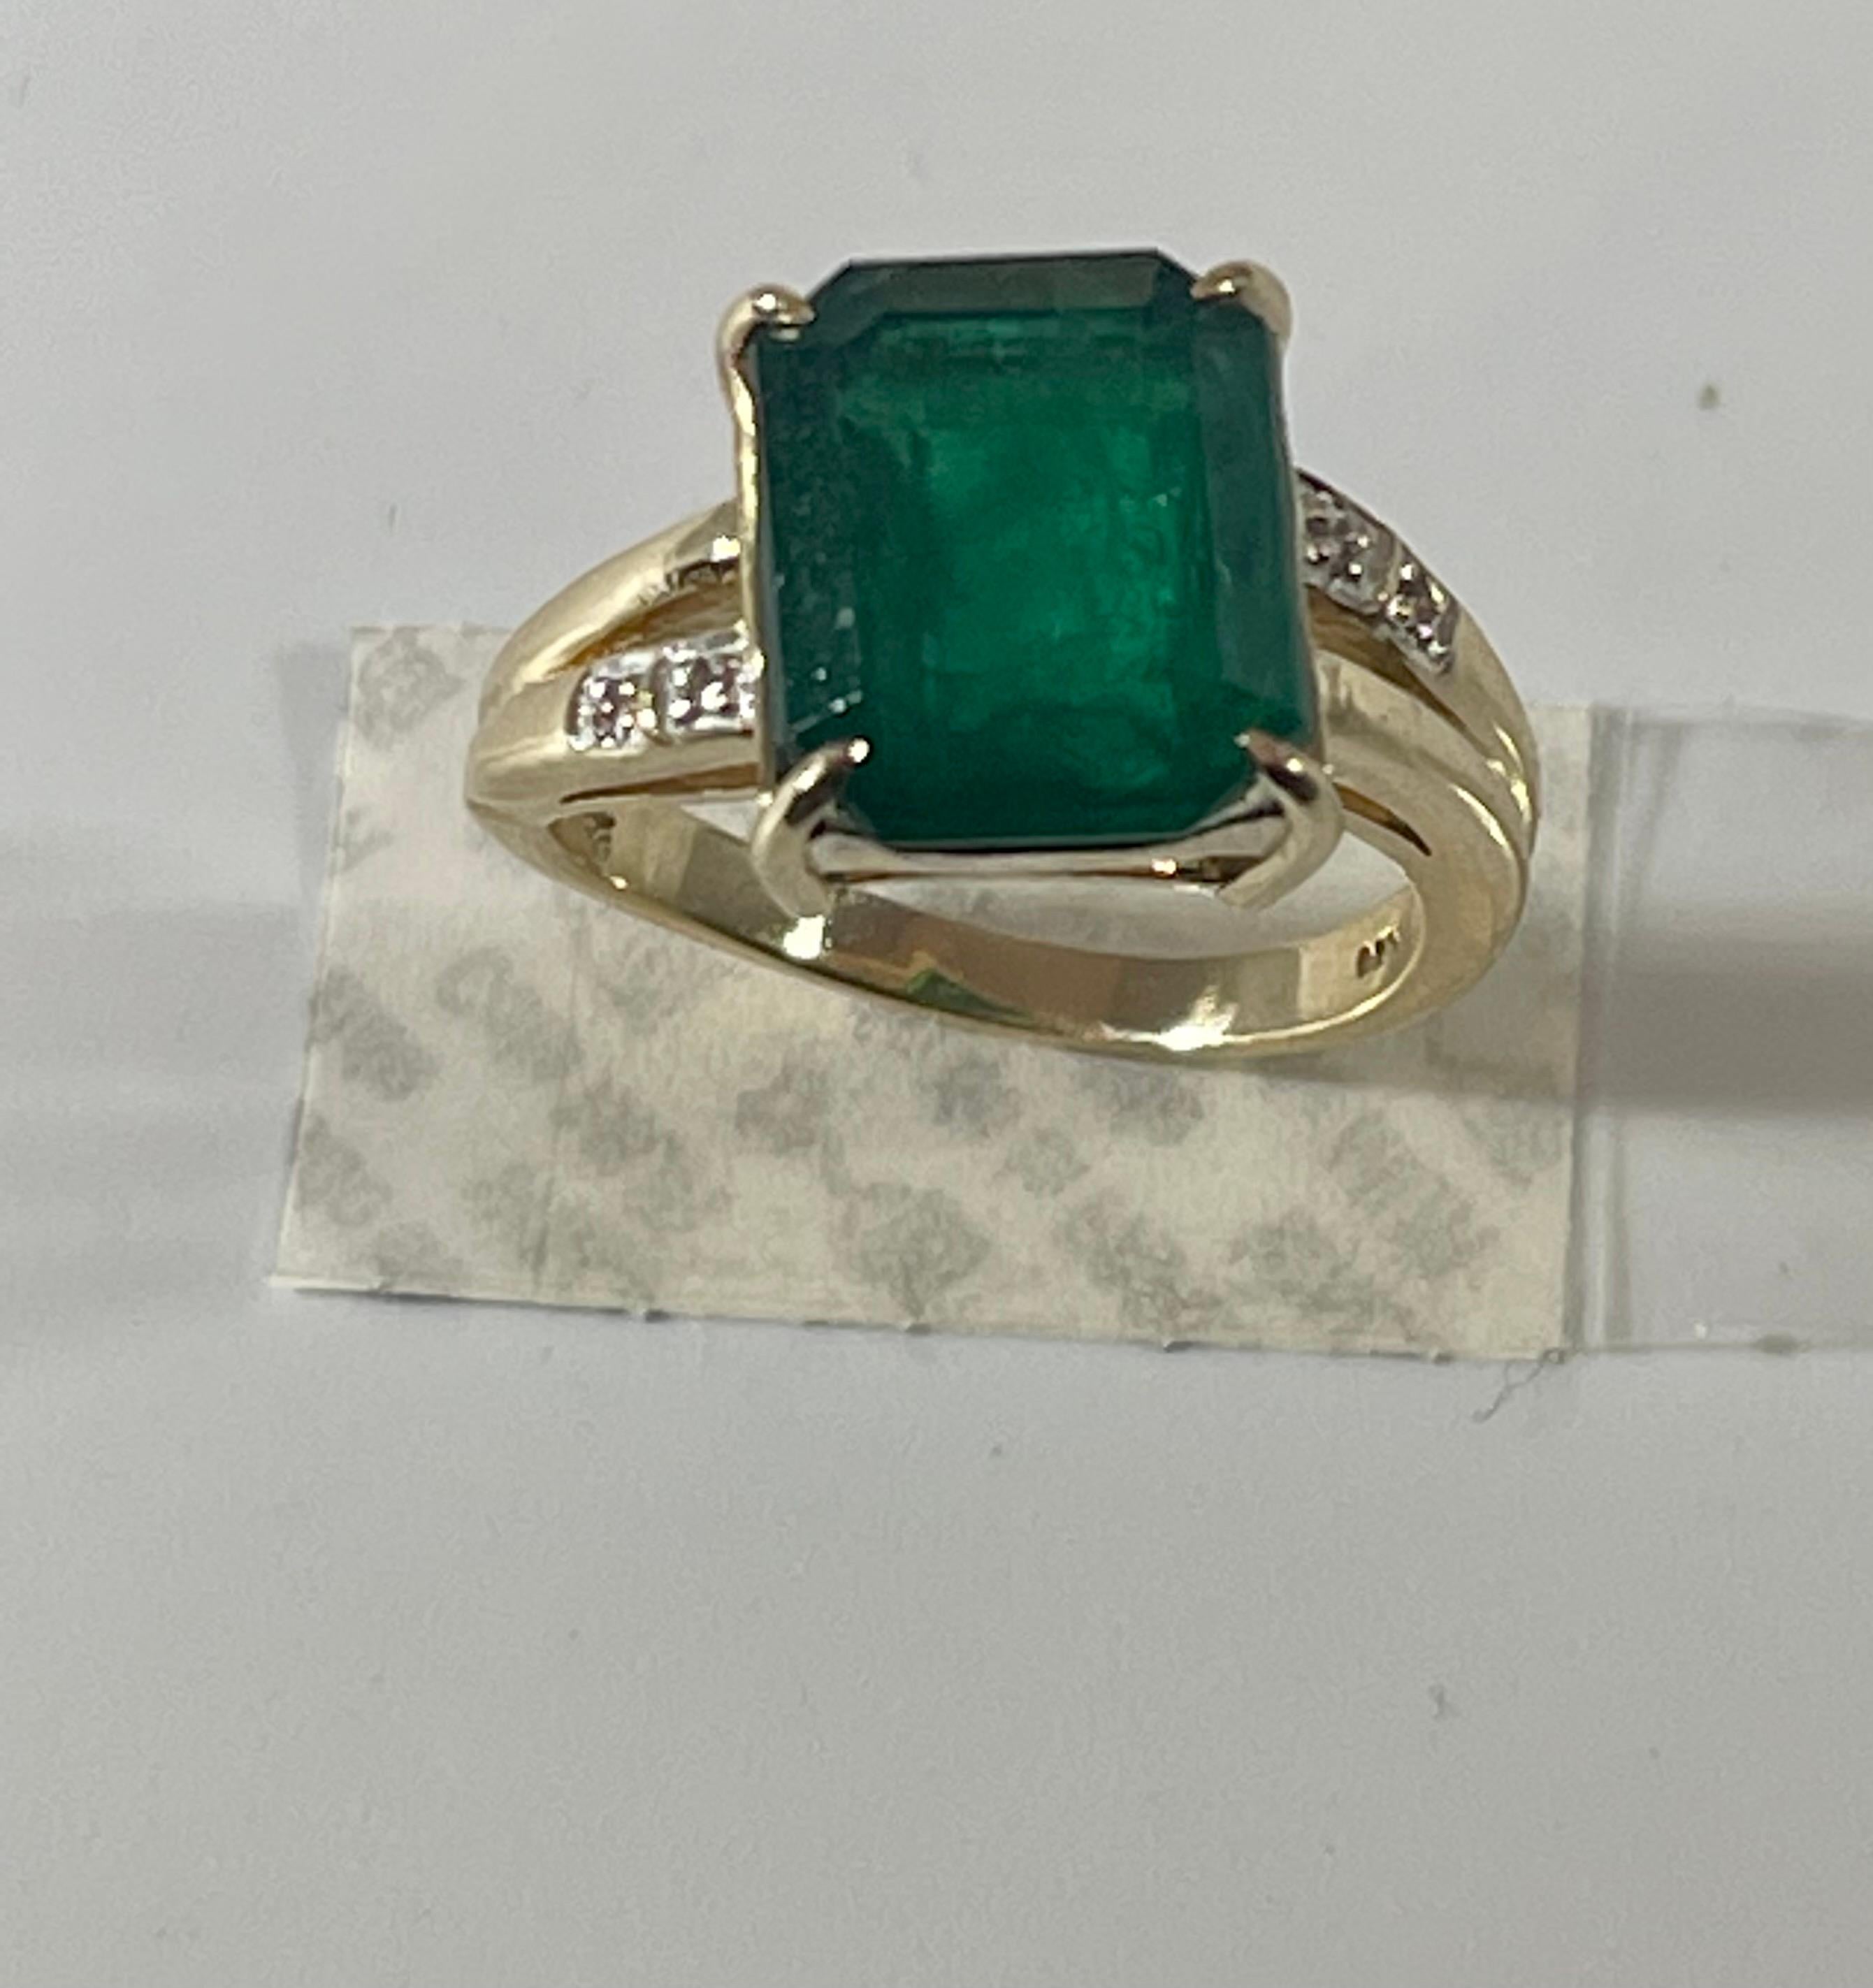 4.5 Carat Natural Emerald Cut Emerald Ring 14 Karat Yellow Gold 2